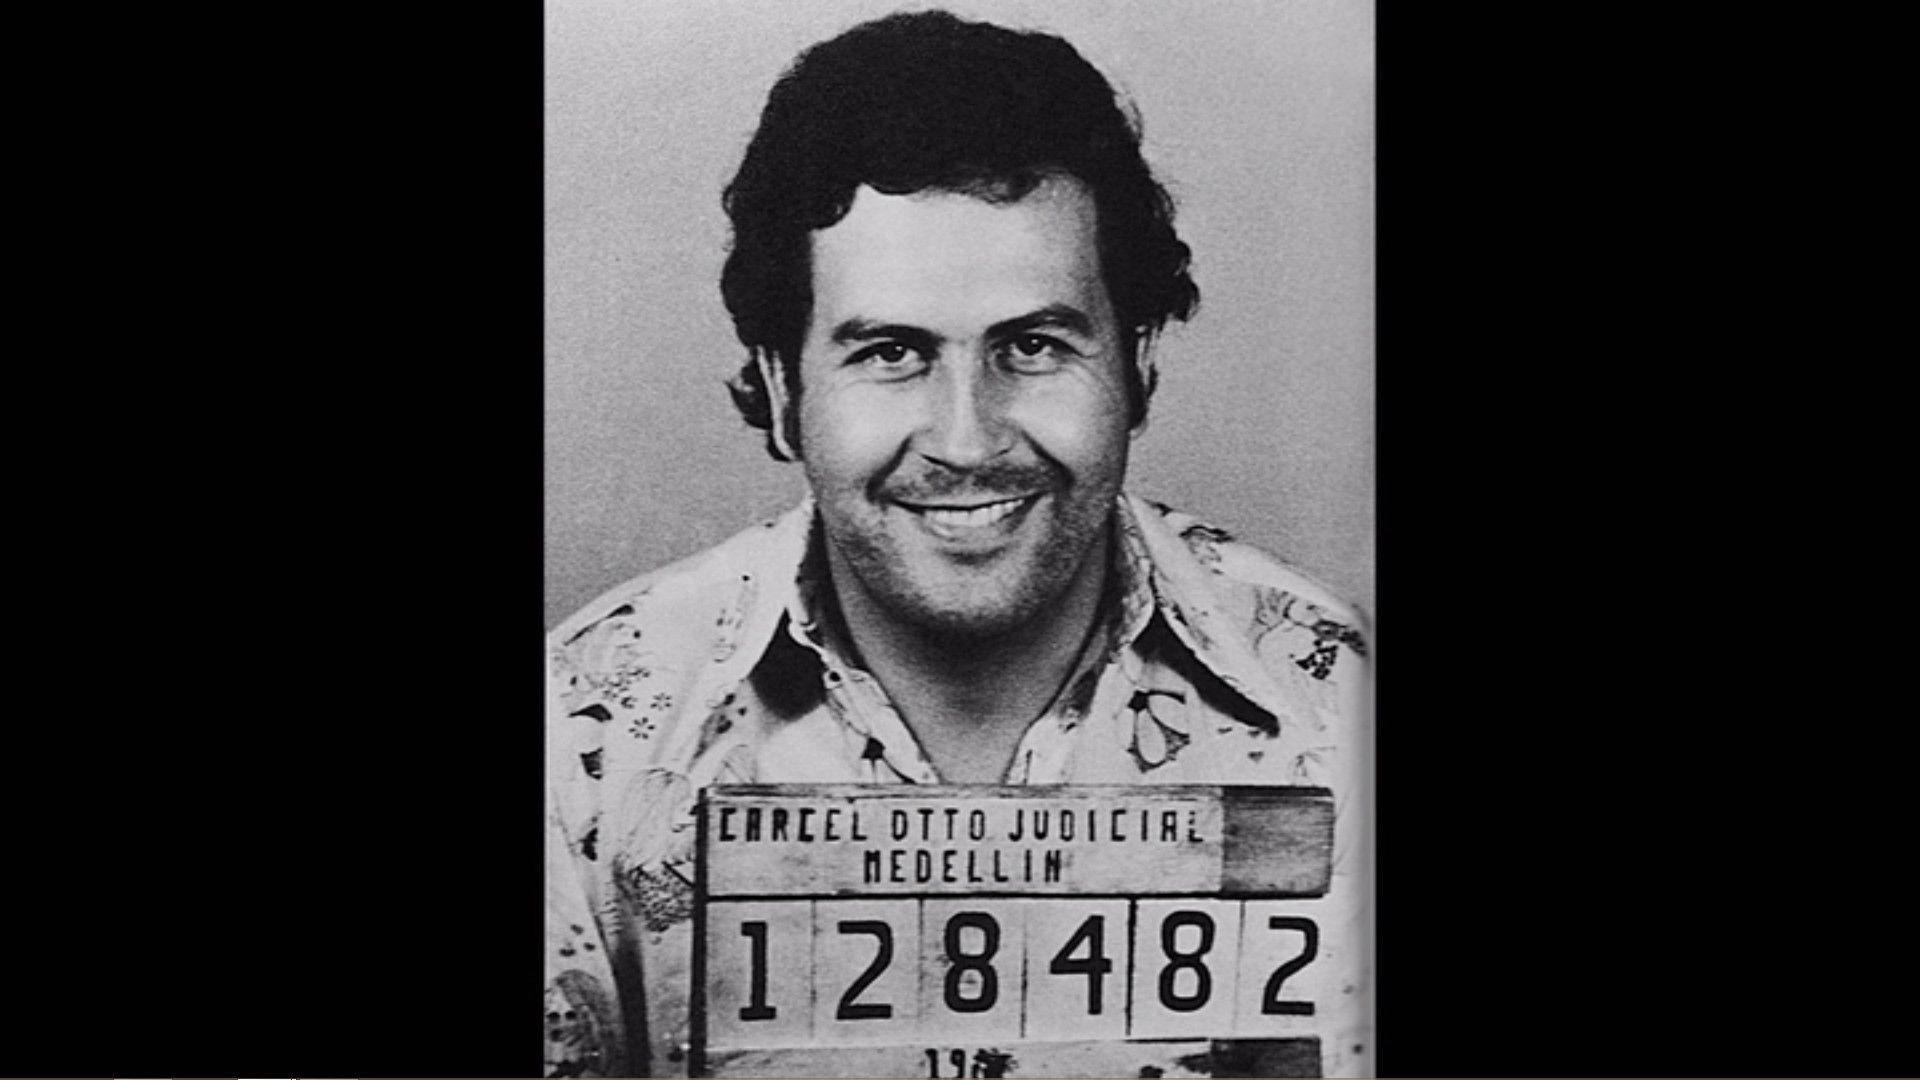 1920x1080 Hd Pablo Escobar Wallpaper Data Id 295382 P - vrogue.co